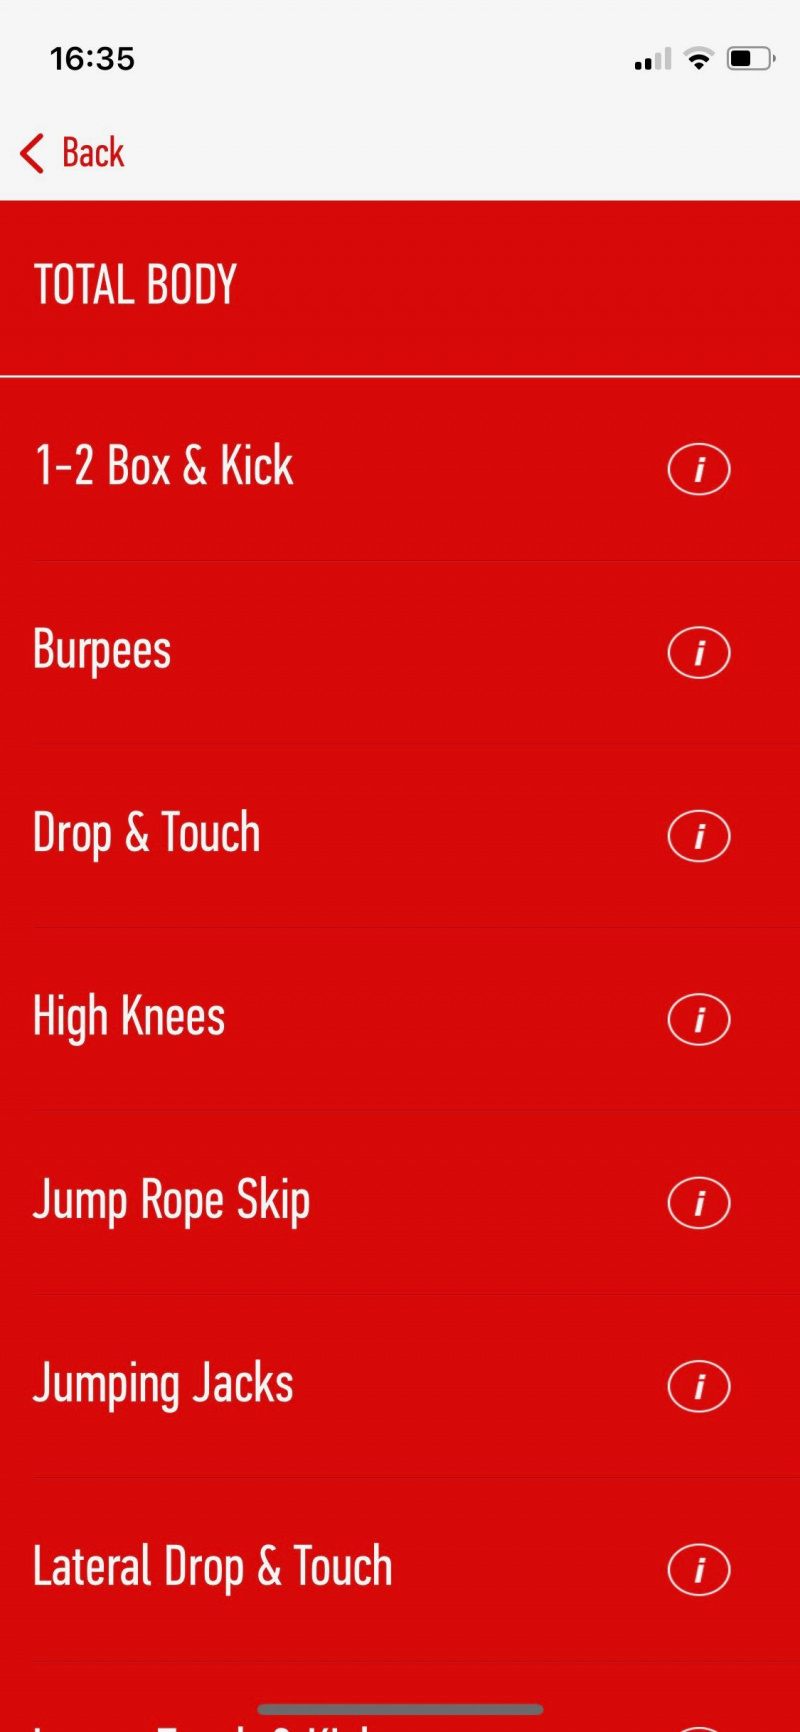   Screenshot dell'app J&J di 7 minuti che mostra un esempio di una routine di esercizi